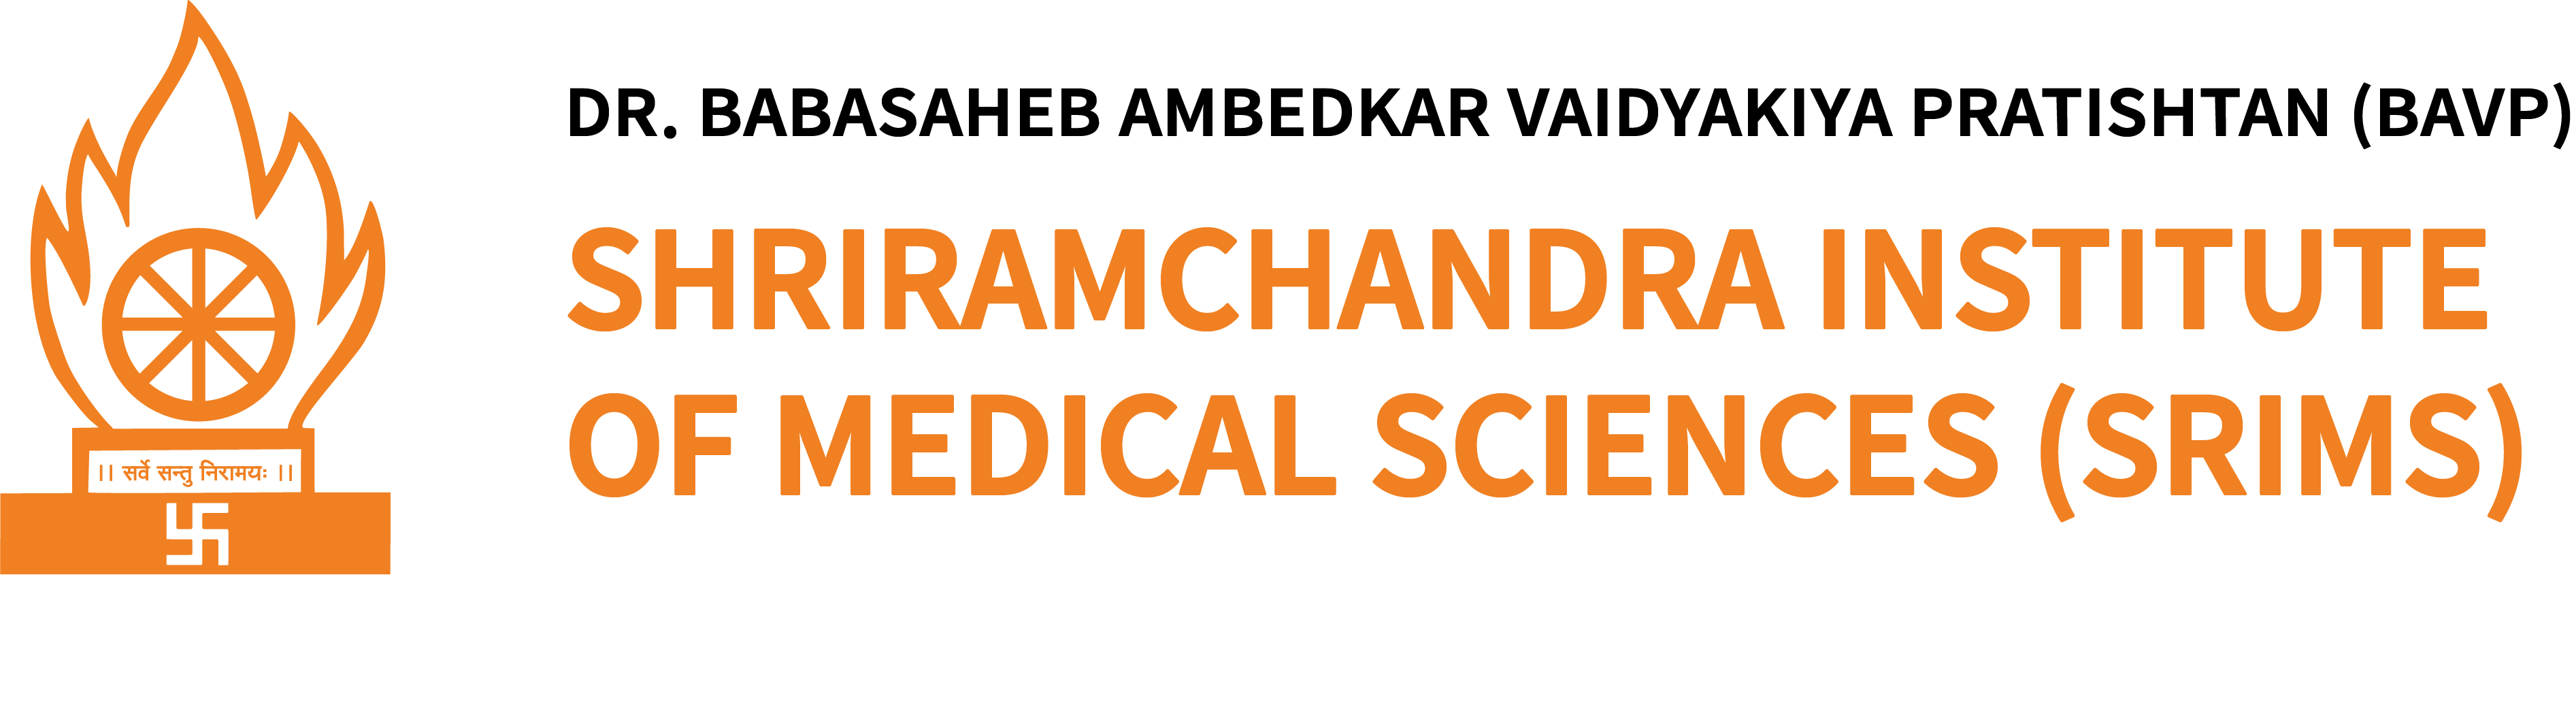 Shri Ramchandra institute of medical sciences